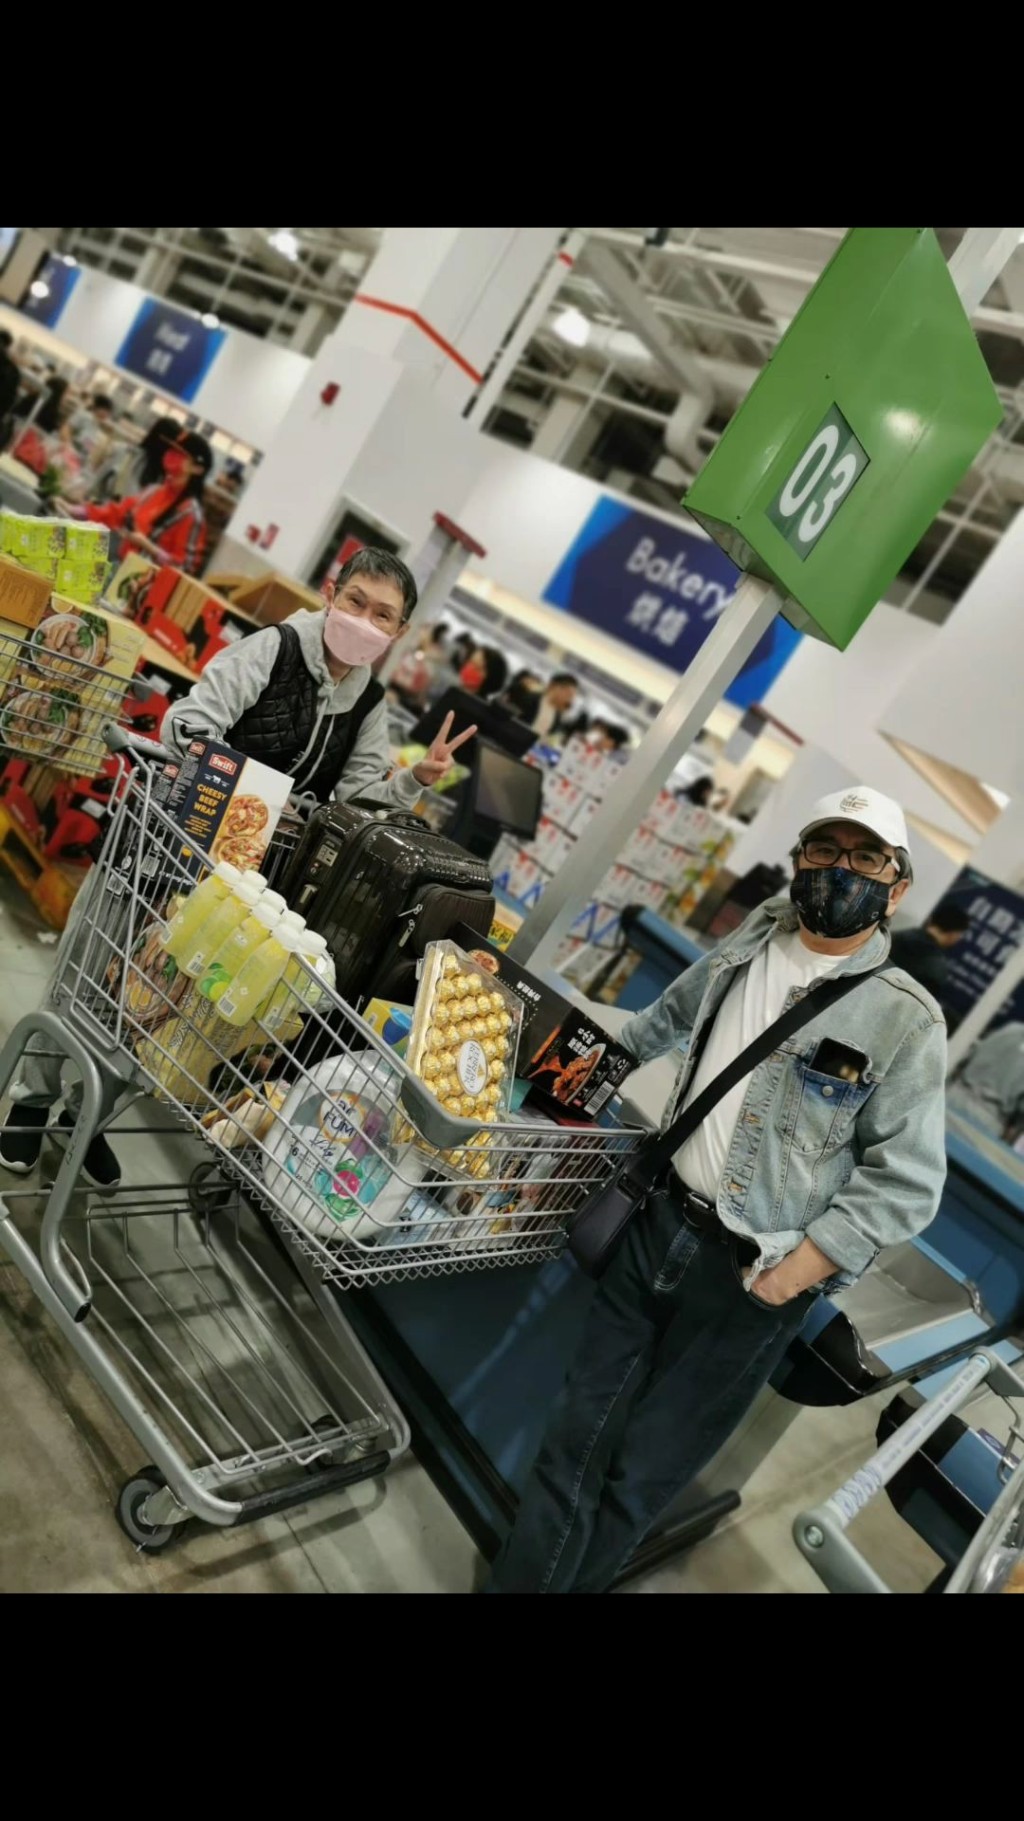 姜大卫早前三代同堂北上深圳超市山姆办年货。